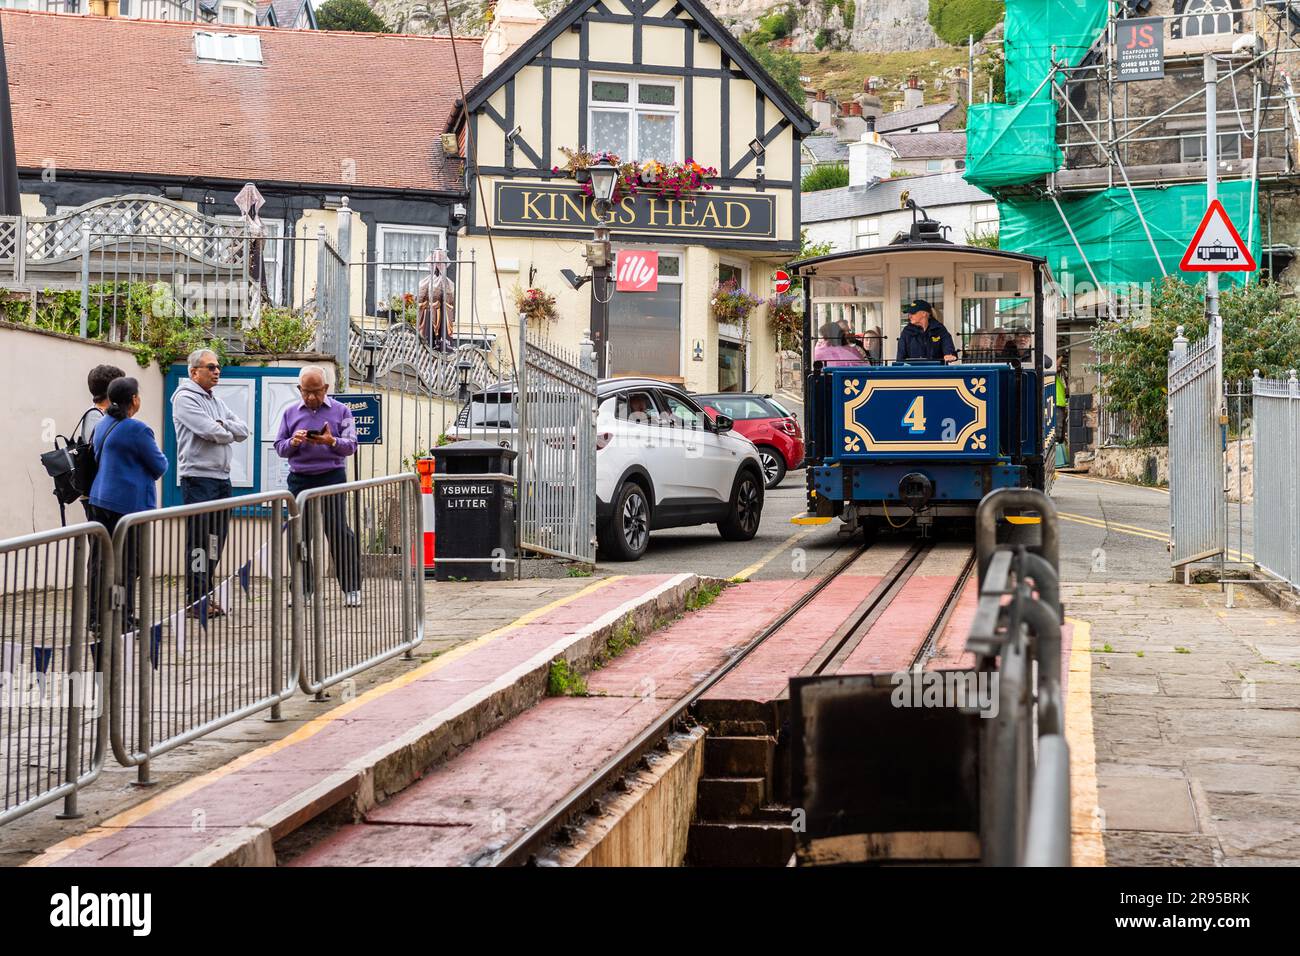 Il tram n. 4 Great orme passa davanti al pub Kings Head, che si avvicina alla stazione dei tram di Llandudno, Llandudno, Galles del Nord, Regno Unito. Foto Stock